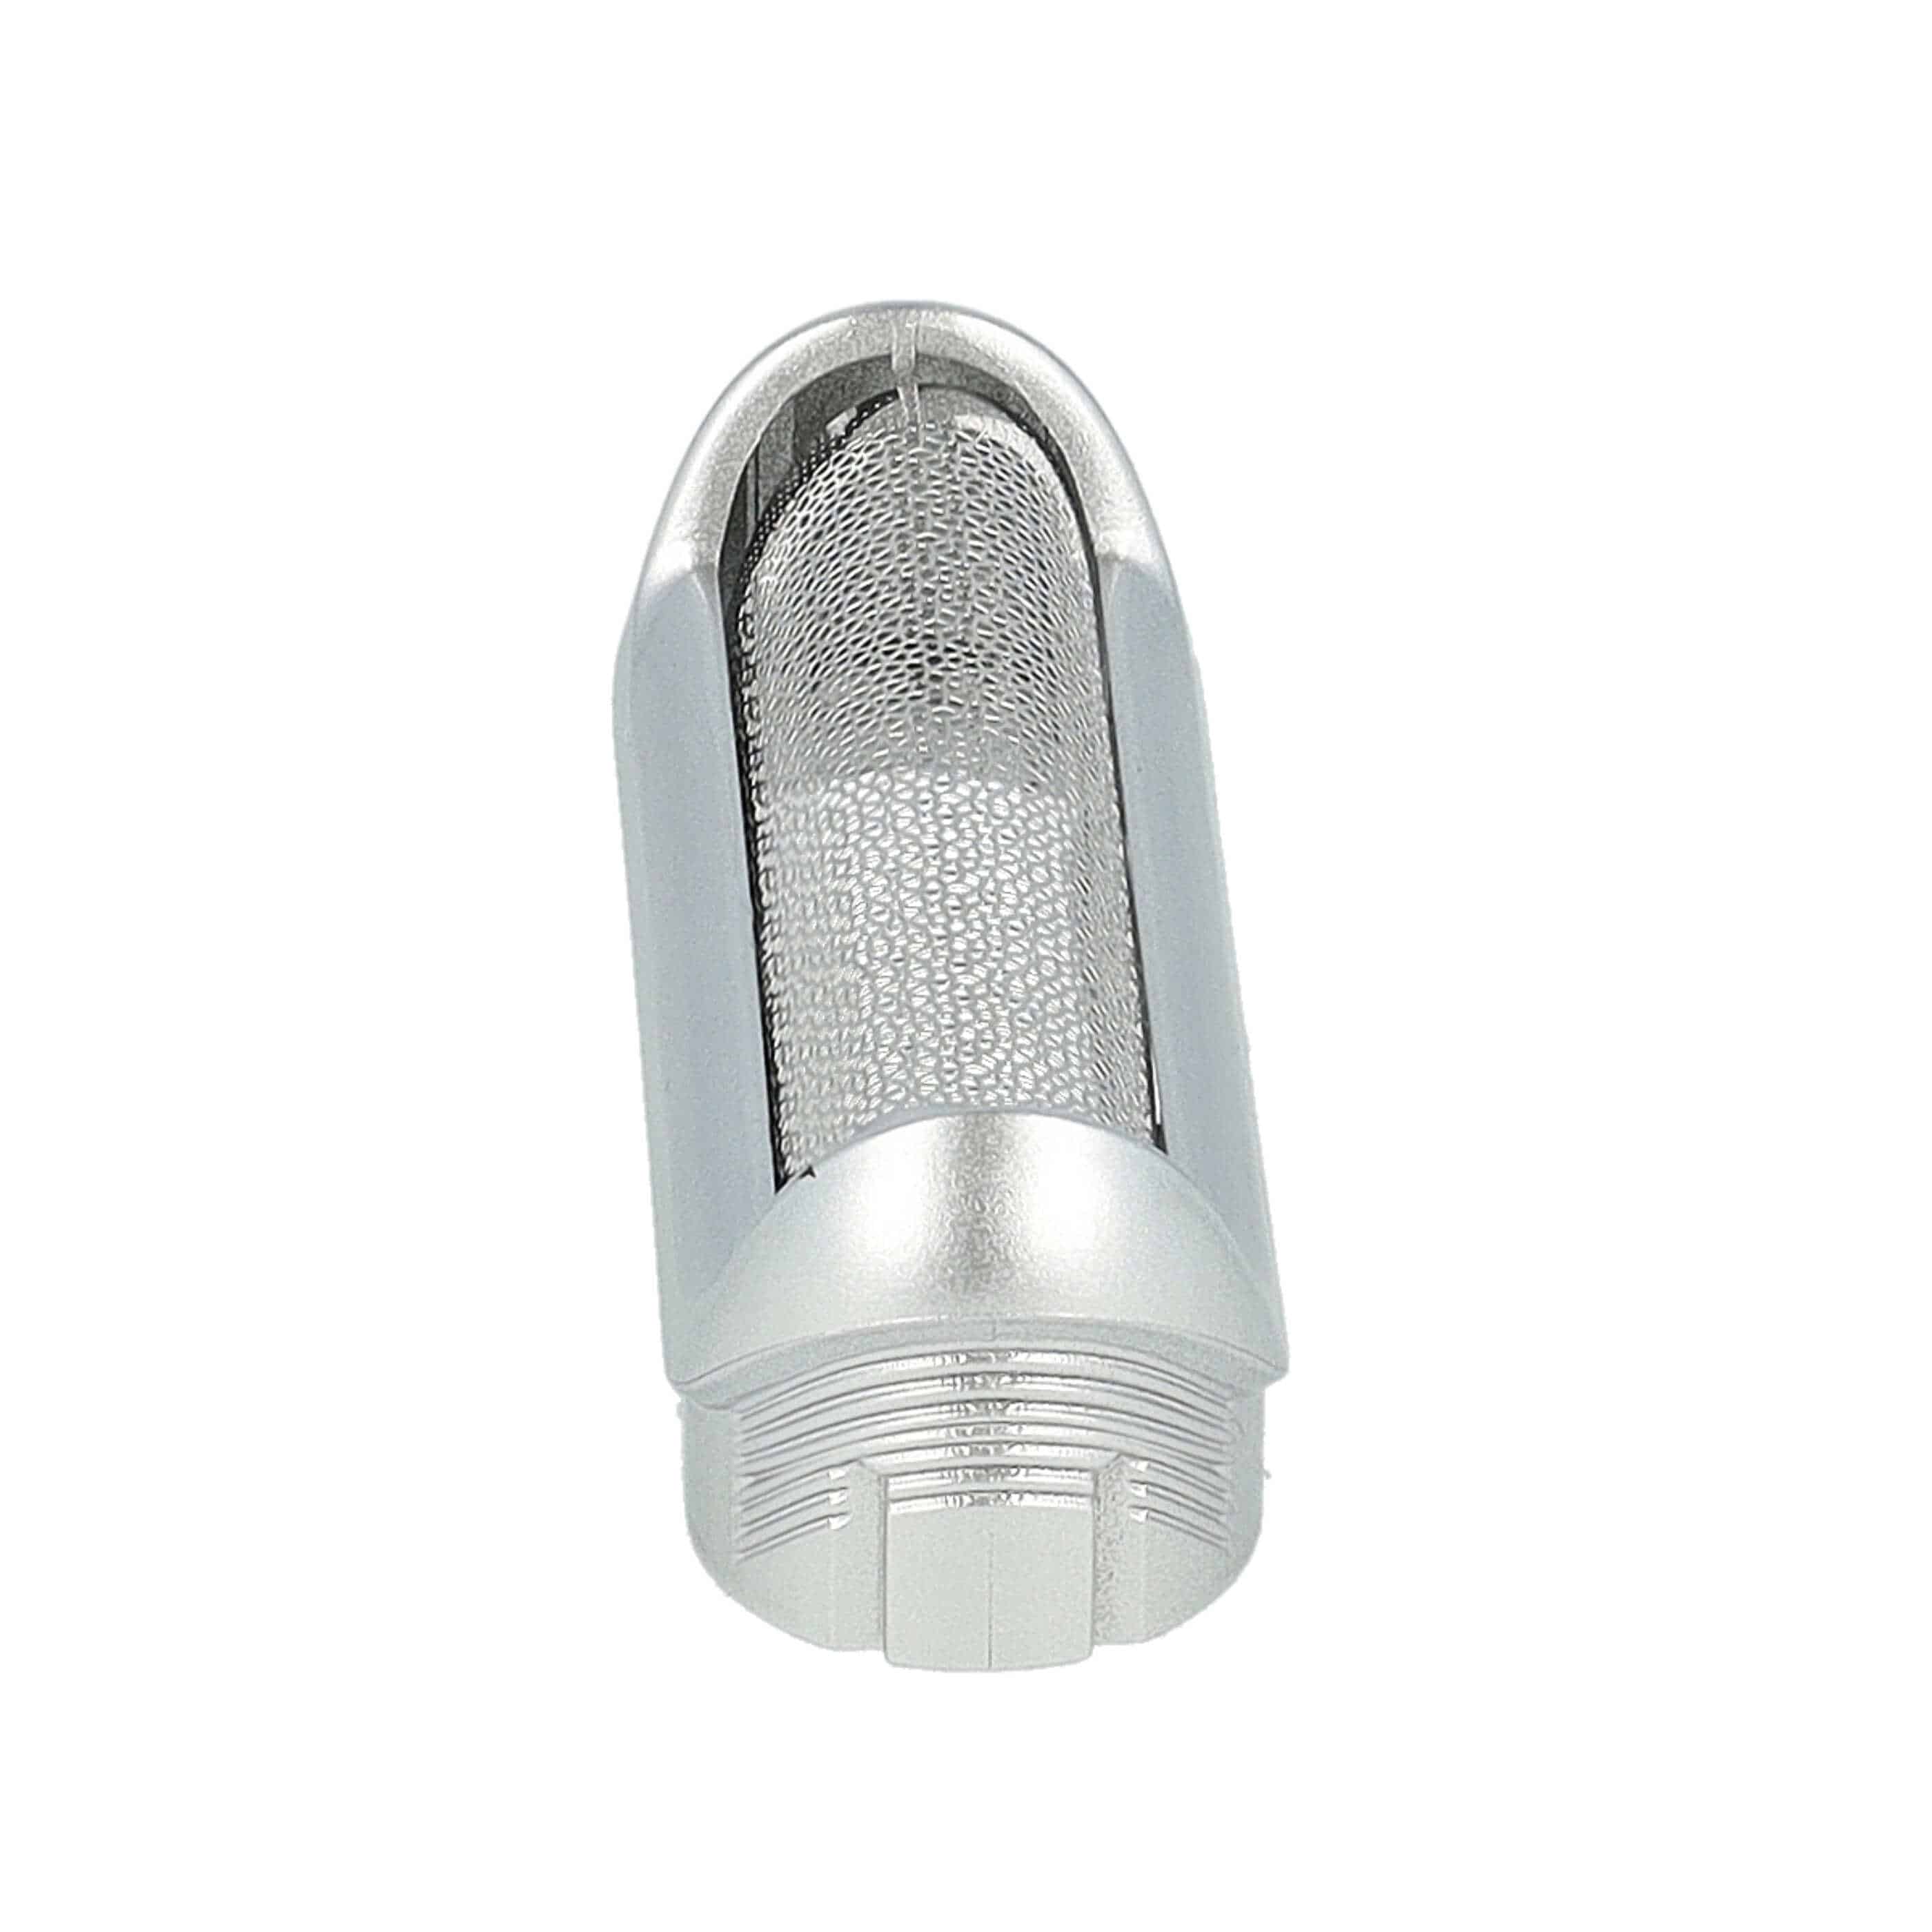 Lámina de corte reemplaza Braun 5S para afeitadoras Braun - incl. marco, plata